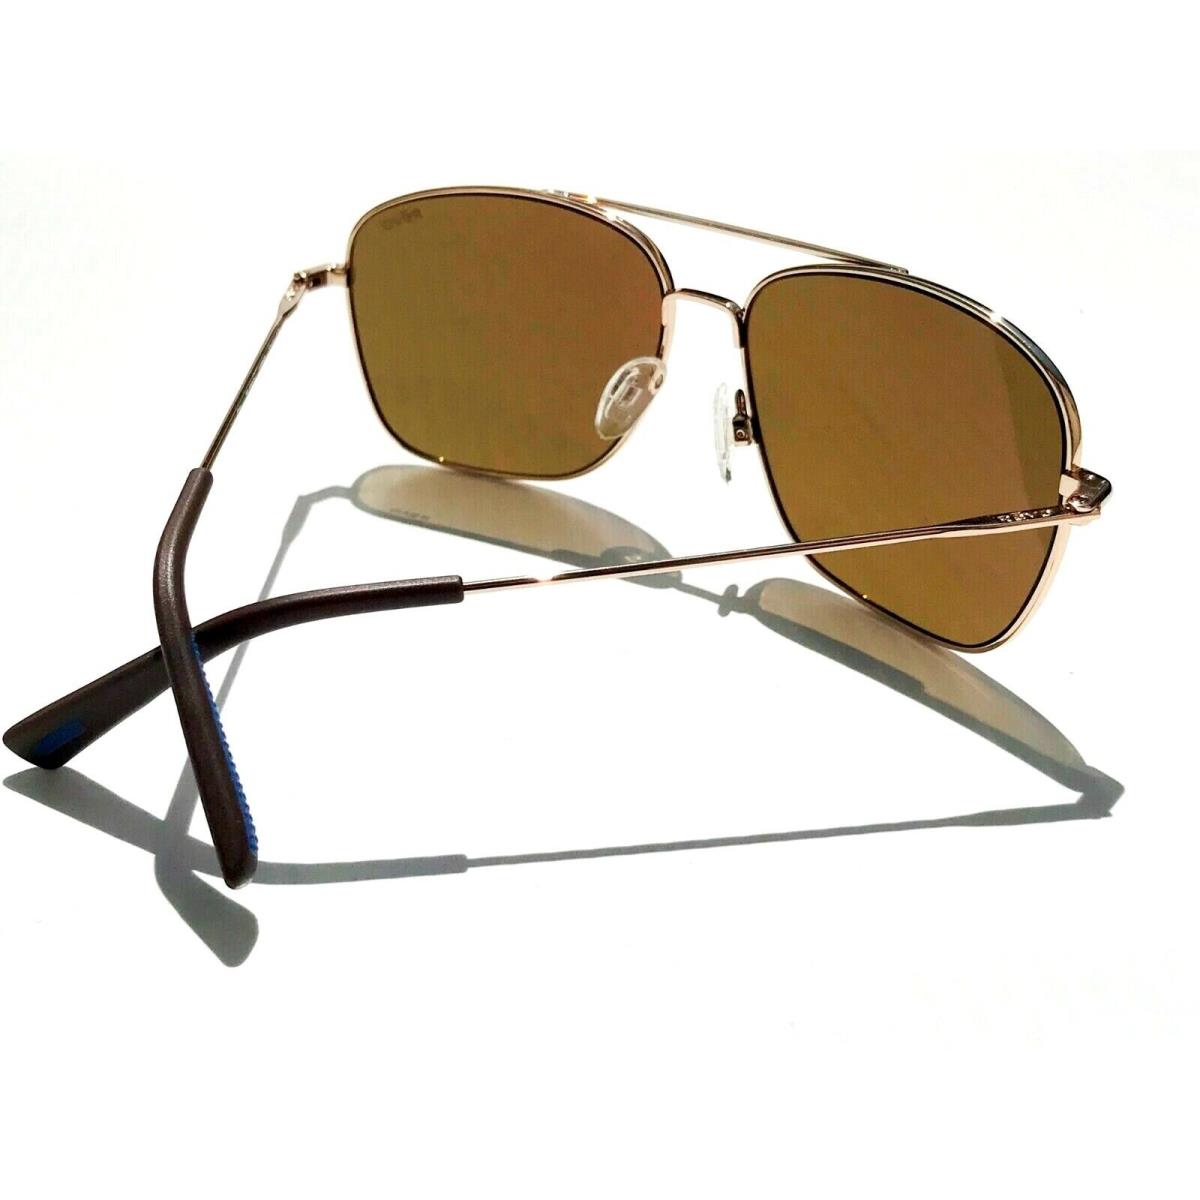 Revo sunglasses Harbor - Gold Frame, Brown Lens